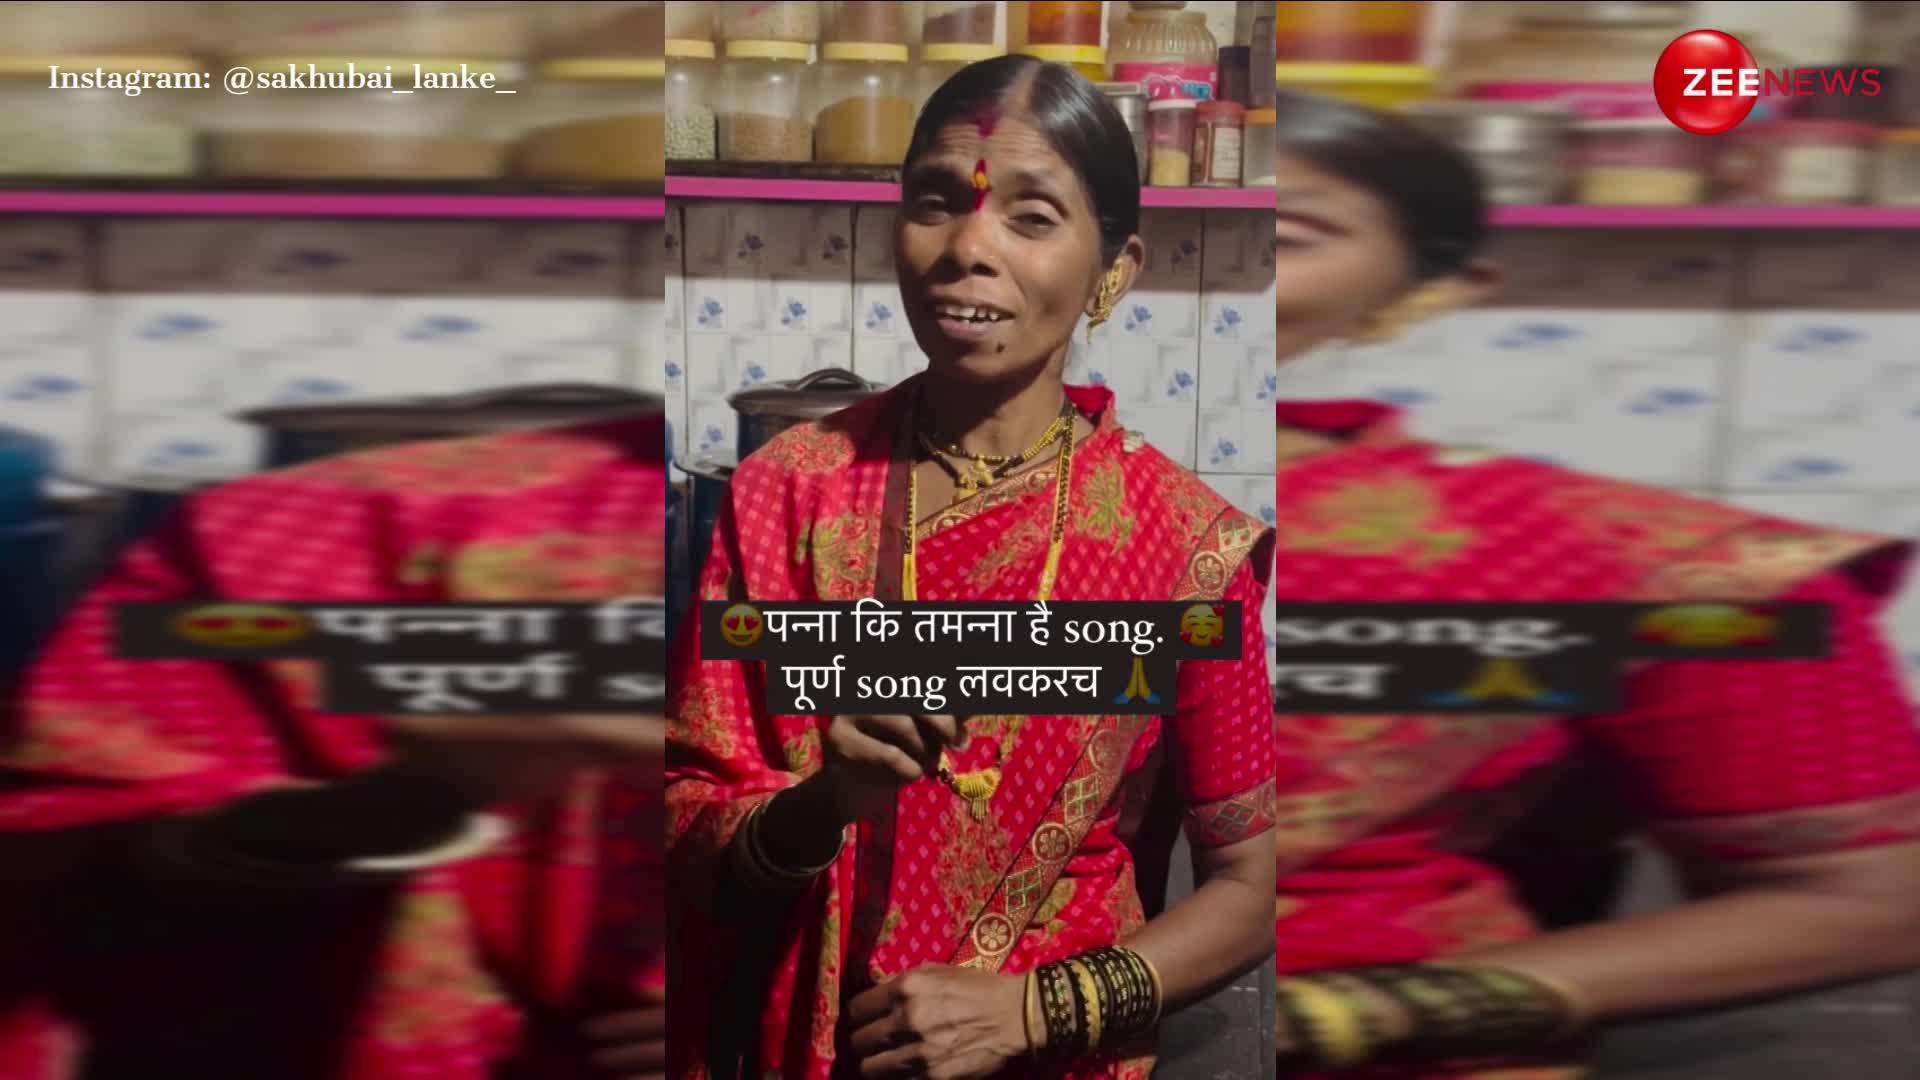 मराठी महिला ने रसोई में खड़े होकर गा दिया 'पन्ना की तमन्ना है कि हीरा मुझे..', सुनकर लोग बोले- 'अप्रतिम'